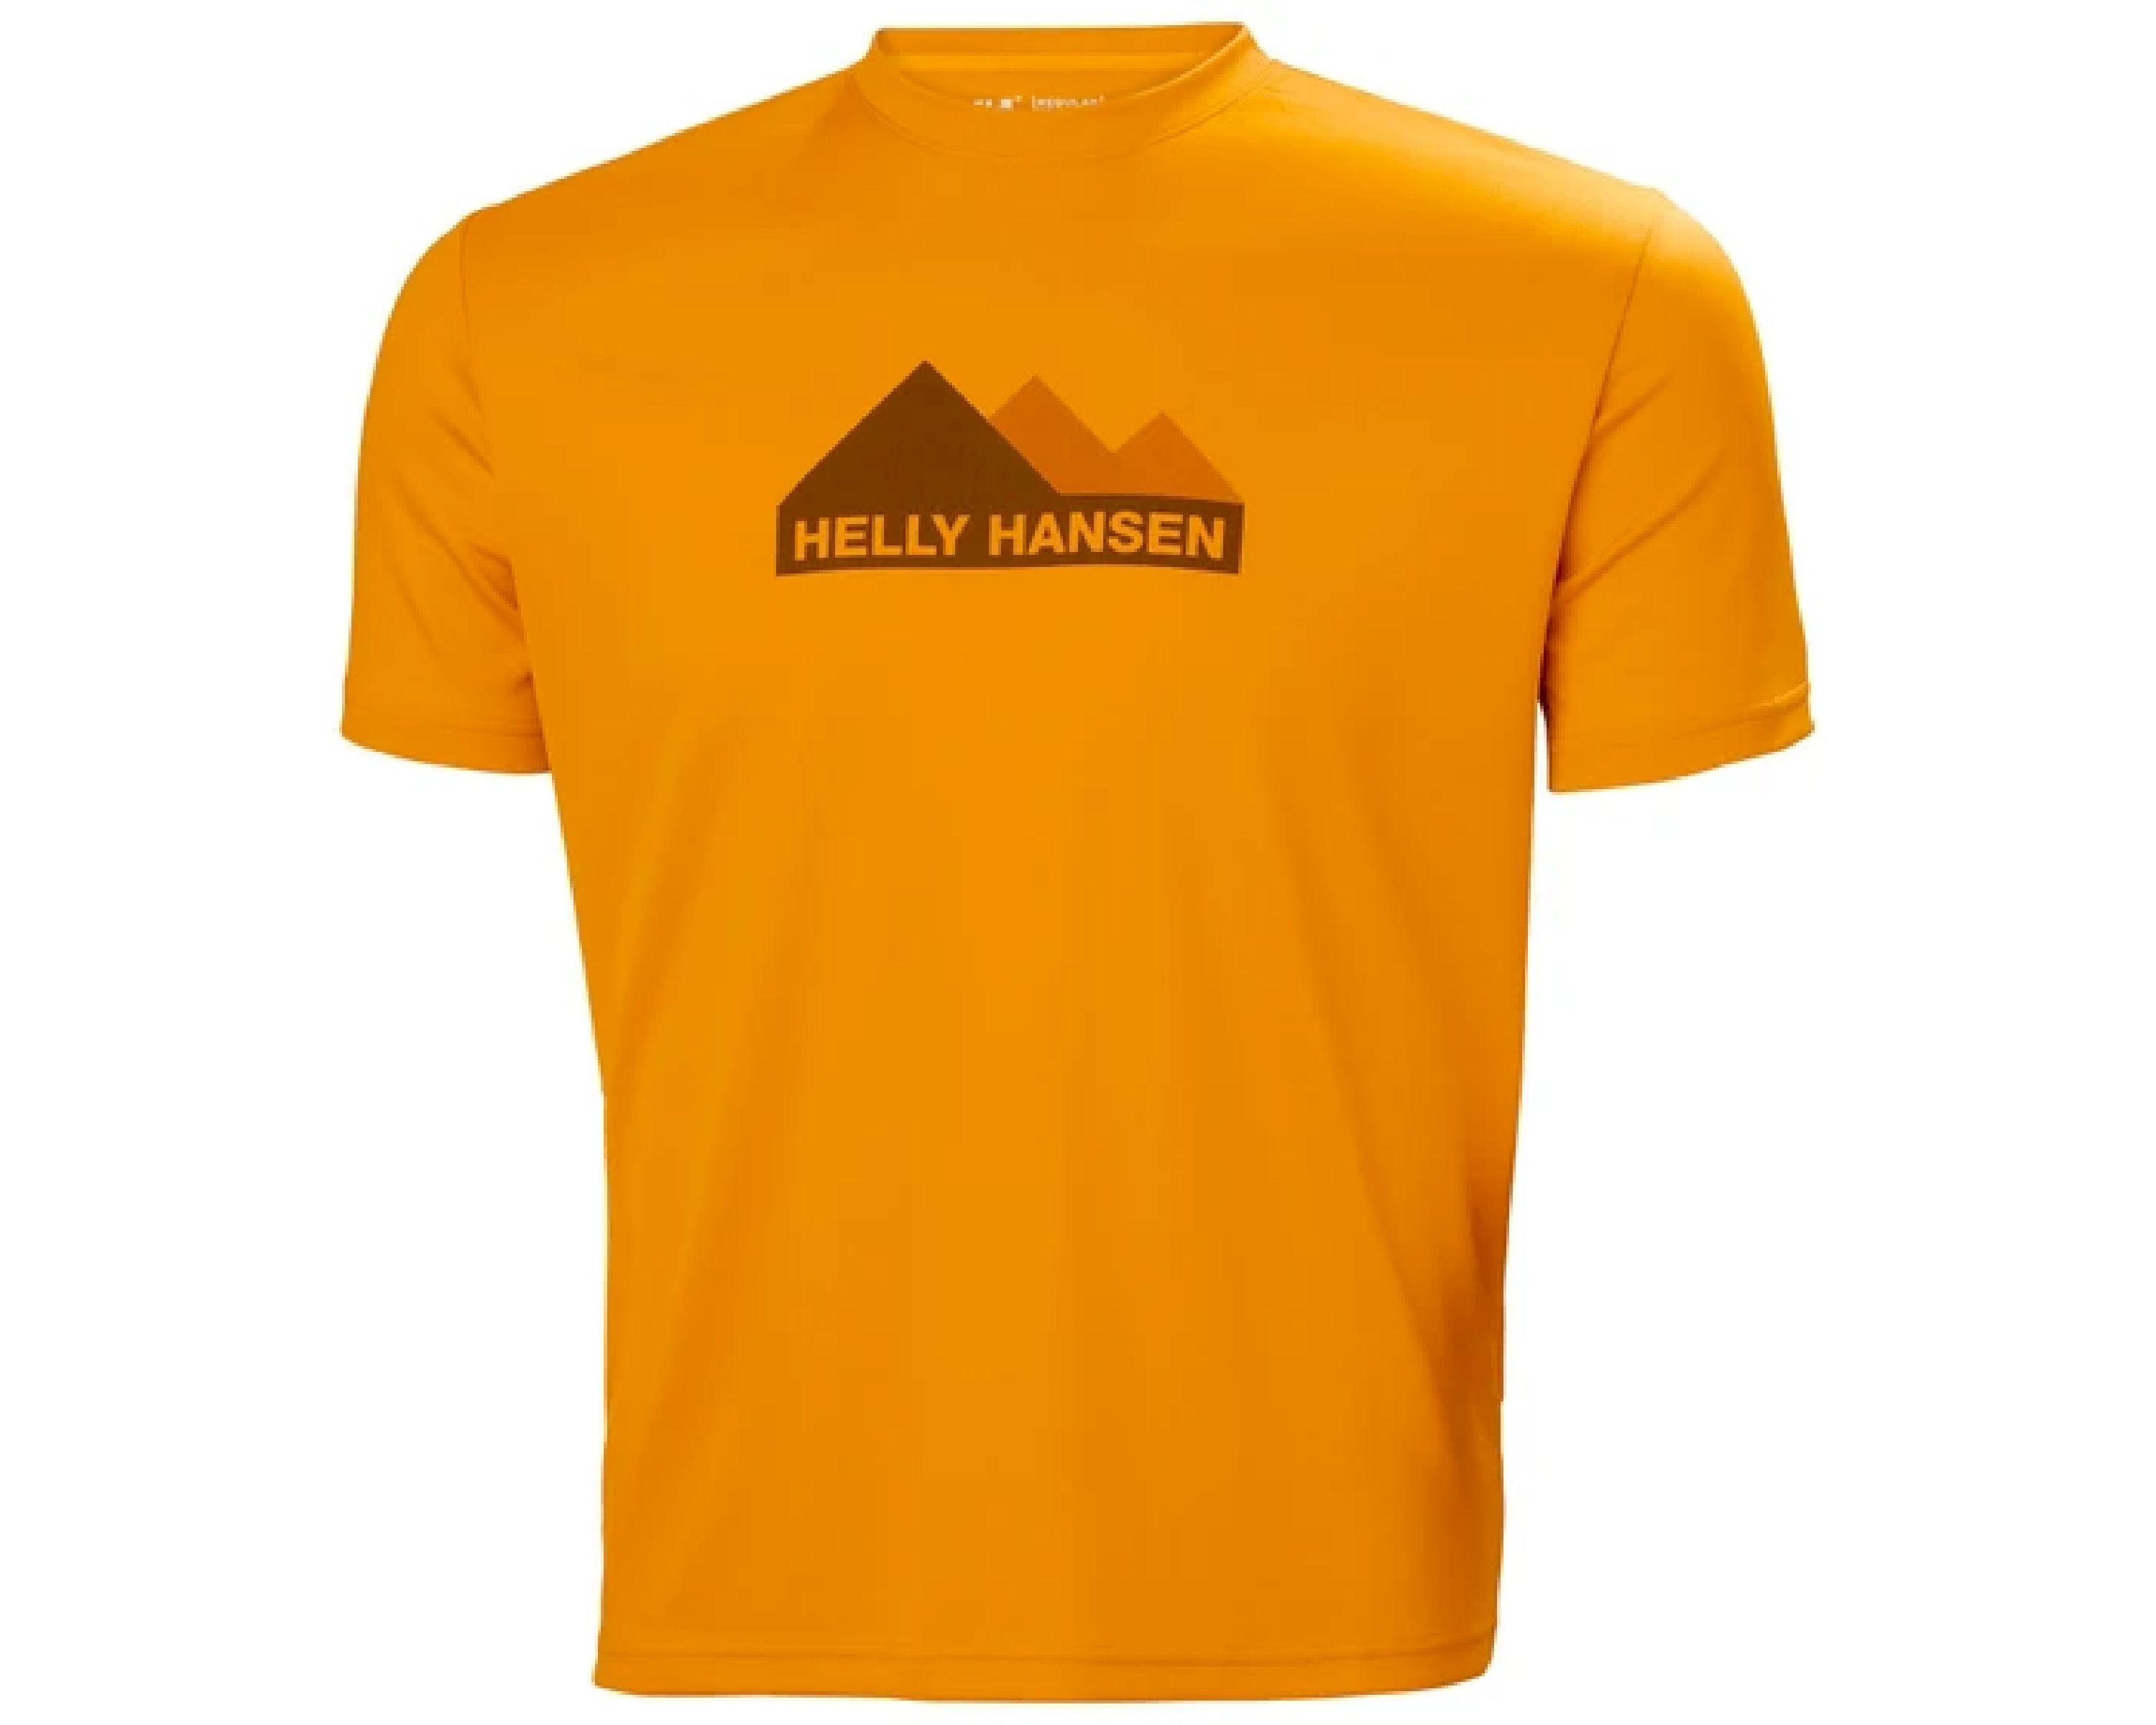 HELLY HANSEN Helly Hansen LIFA TECH GRAPHIC - Camiseta hombre deep